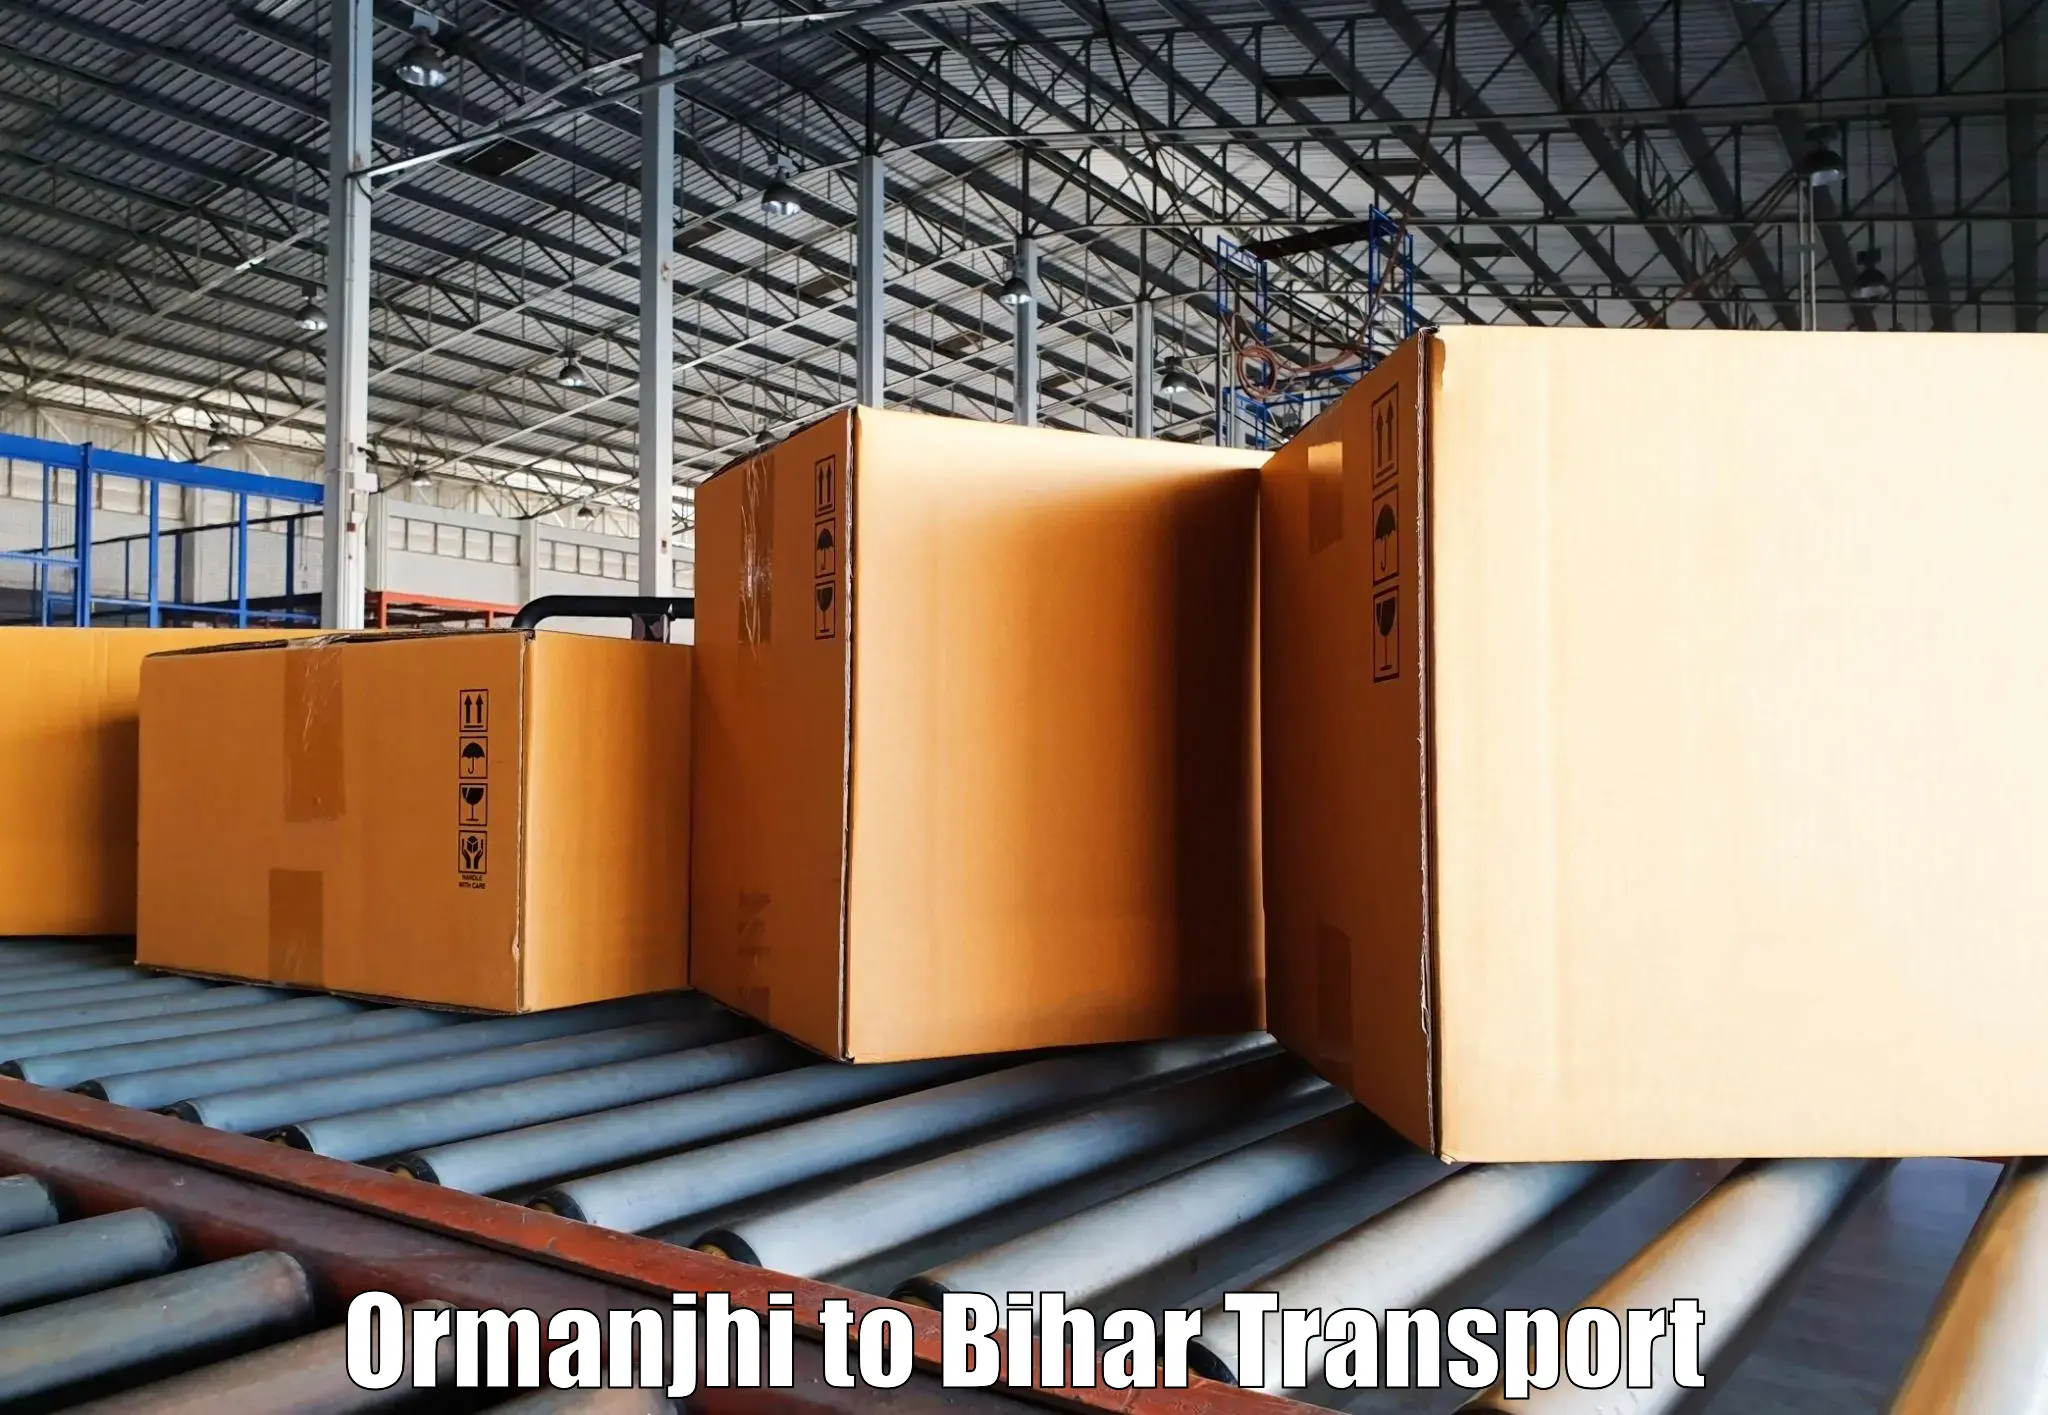 Nearest transport service Ormanjhi to Muzaffarpur